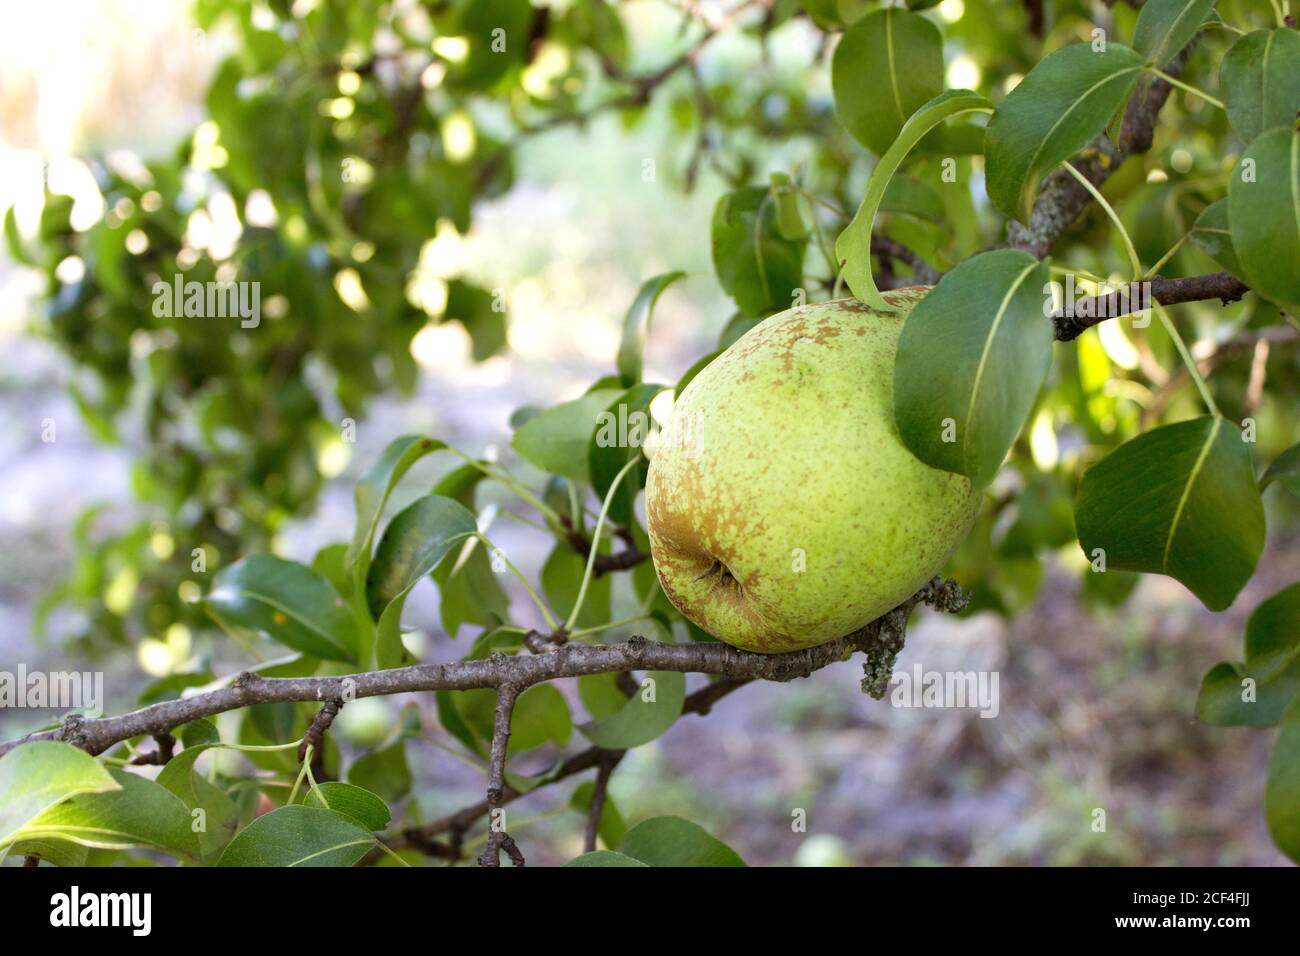 Brutto pera sull'albero, frutteto organico. Foto Stock